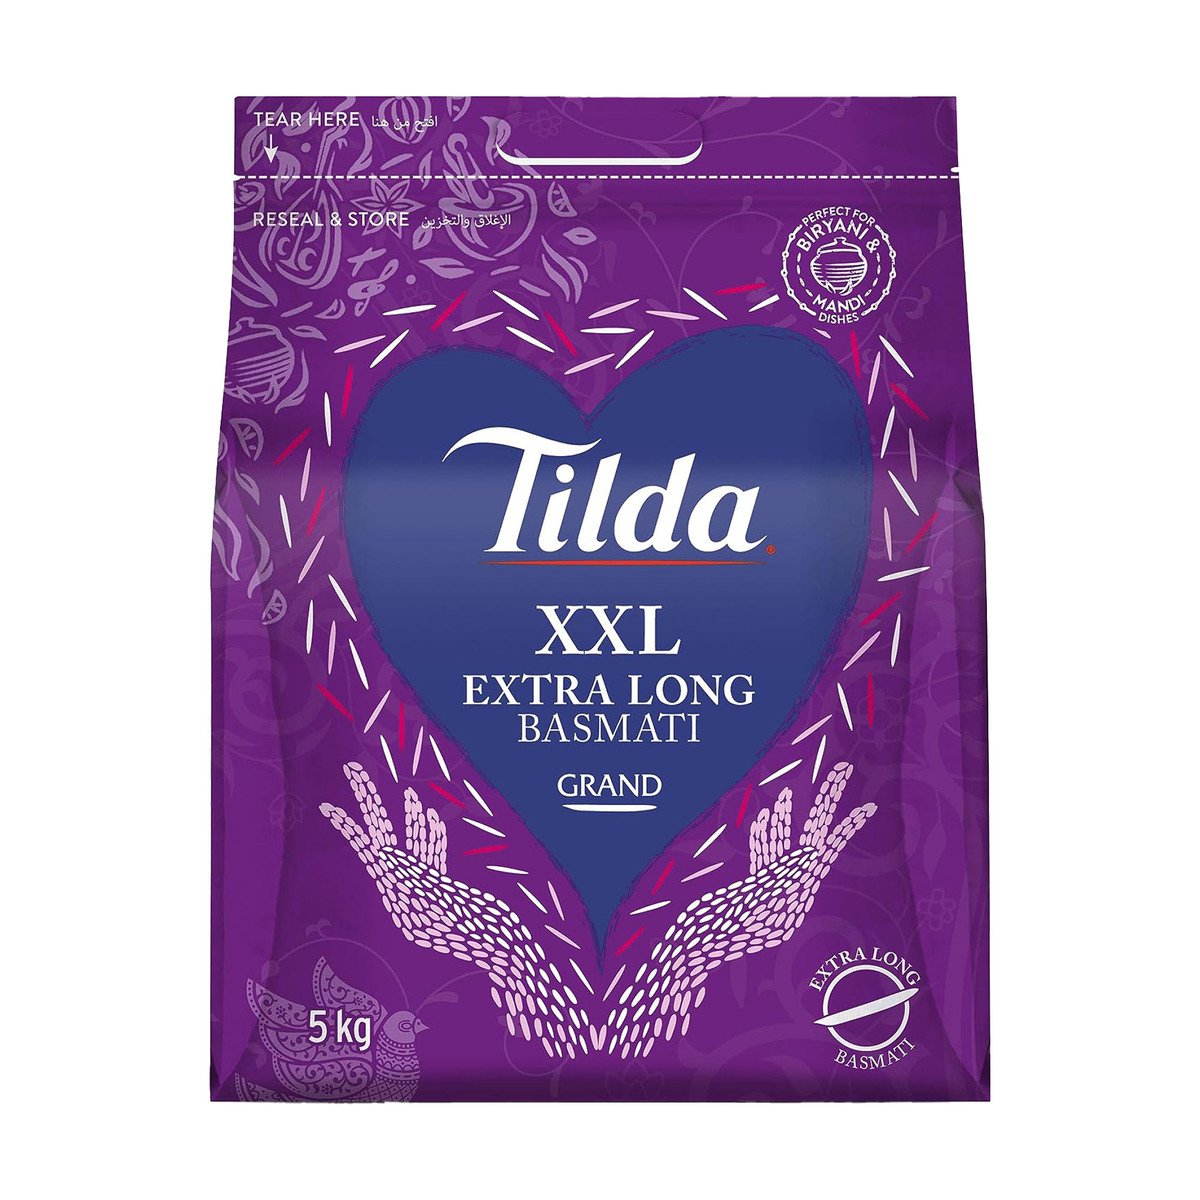 Buy Tilda Grand XXL Extra Long Basmati Rice 5 kg Online at Best Price | Basmati | Lulu UAE in Saudi Arabia